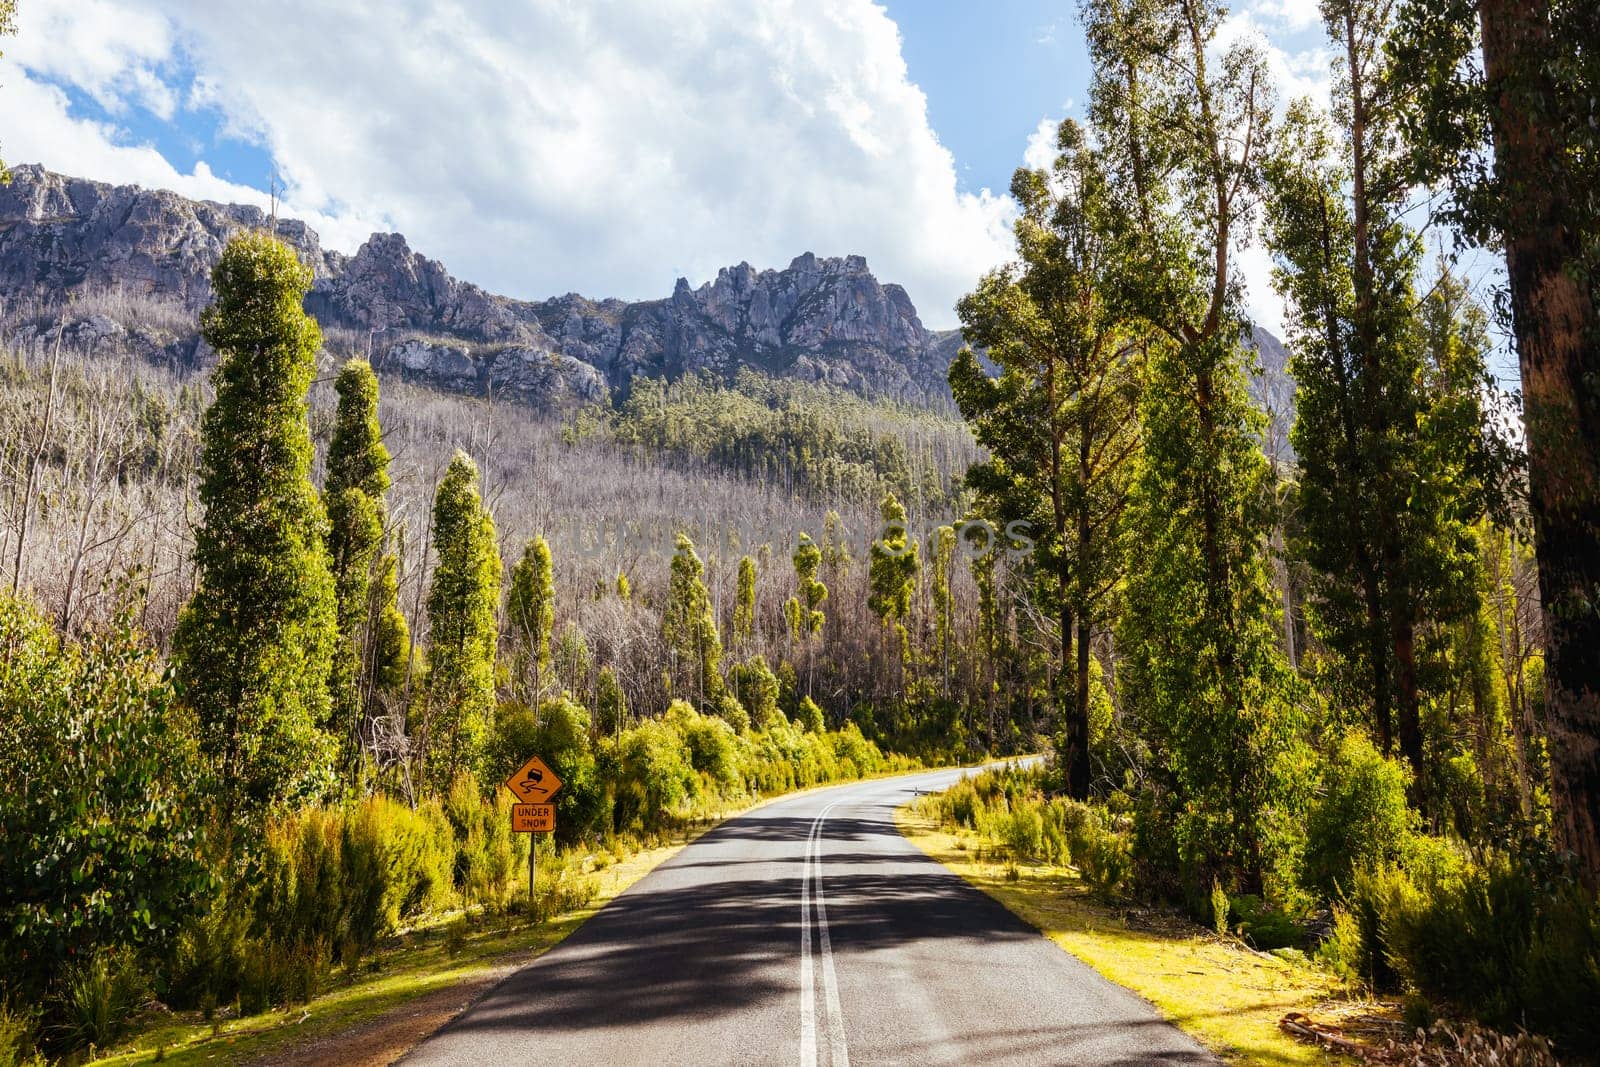 Gordon River Road Landscape in Tasmania Australia by FiledIMAGE